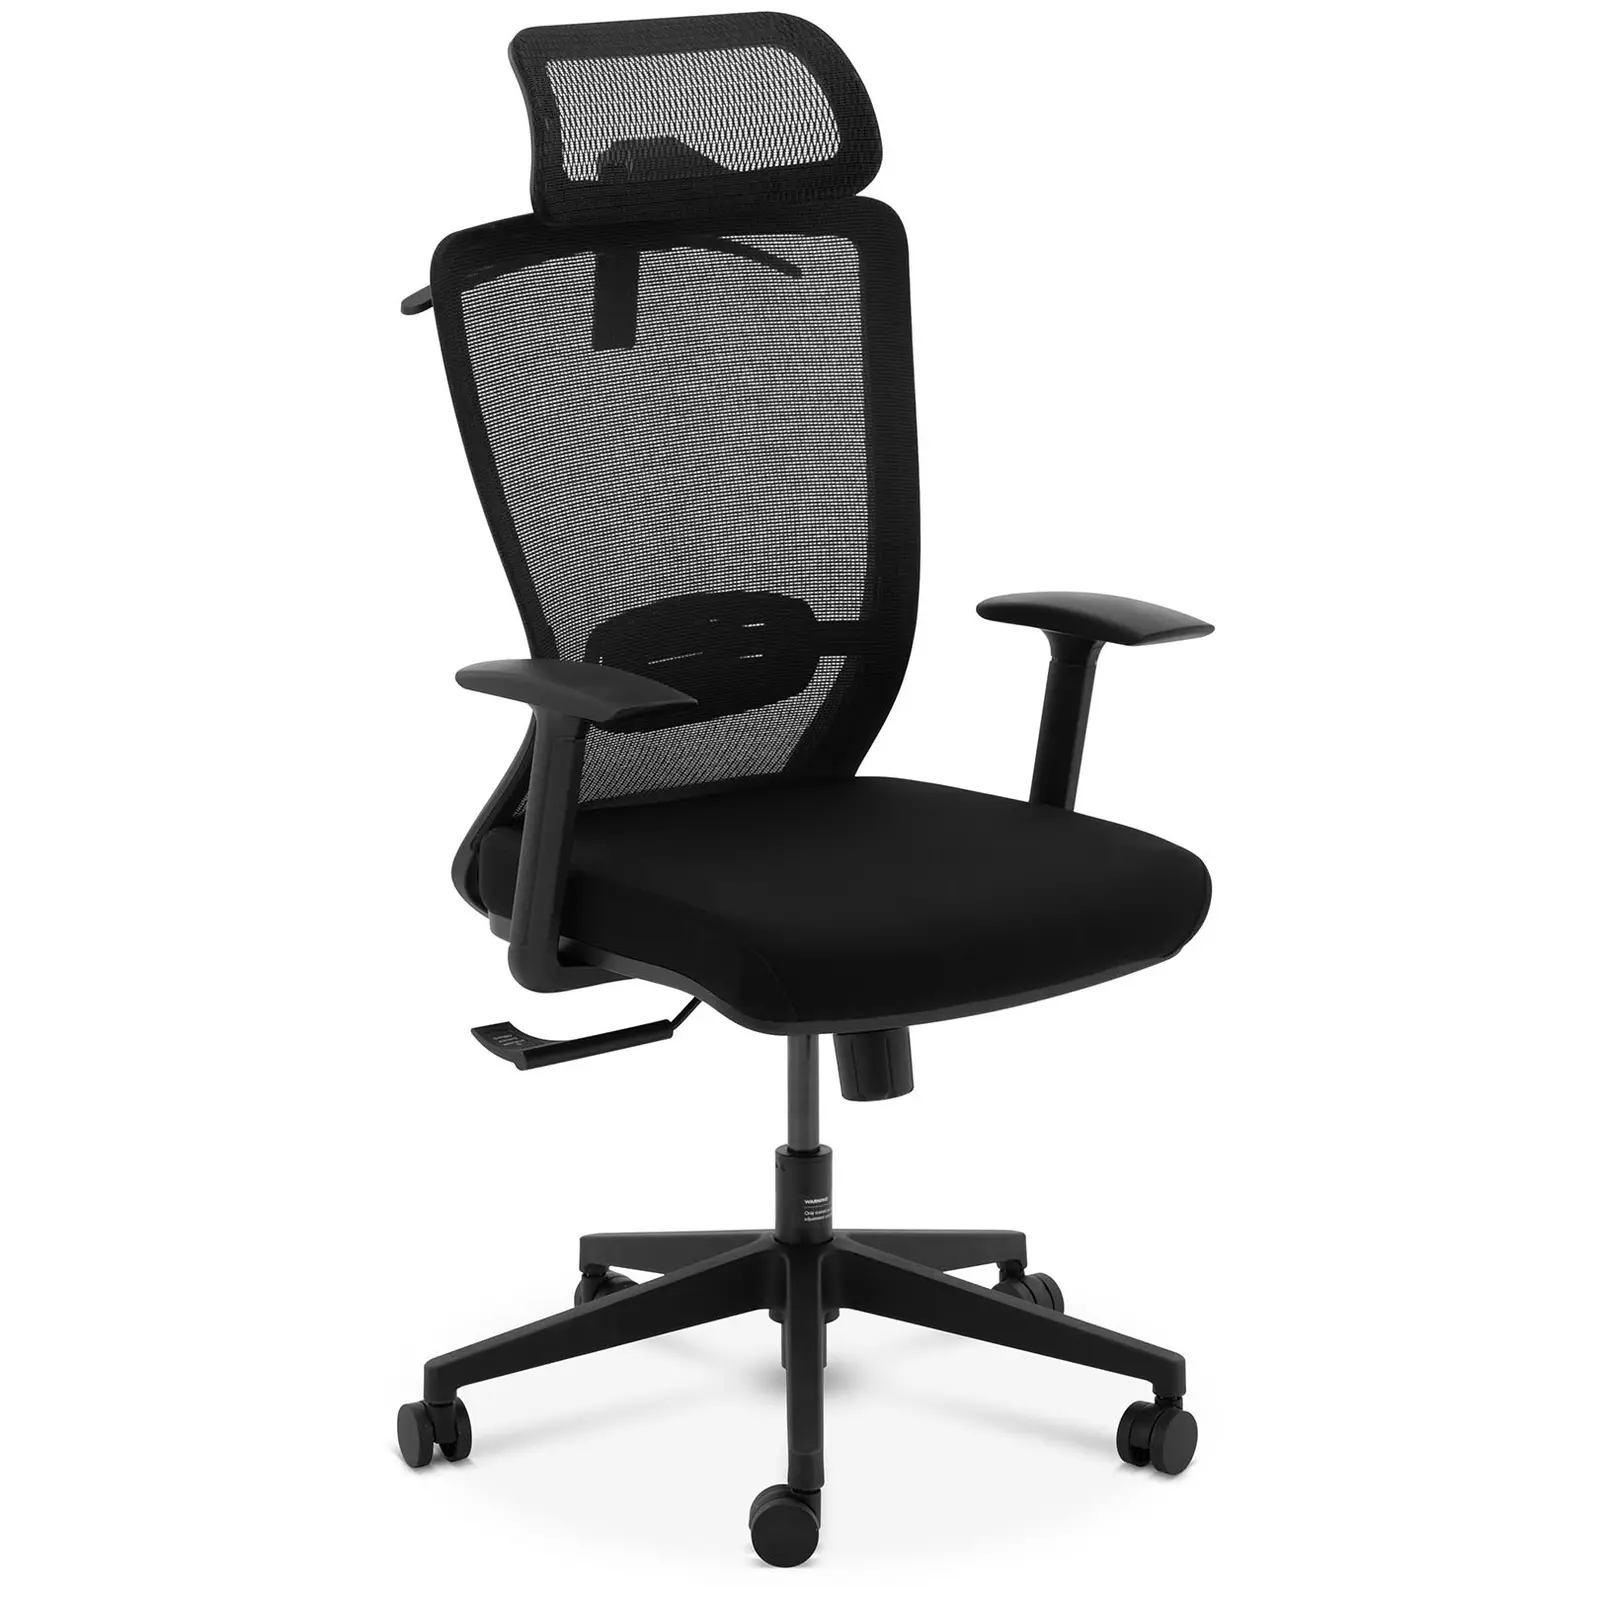 Fotel biurowy - oparcie z siatki - zagłówek - siedzisko 50 x 50 cm - do 150 kg - czarny